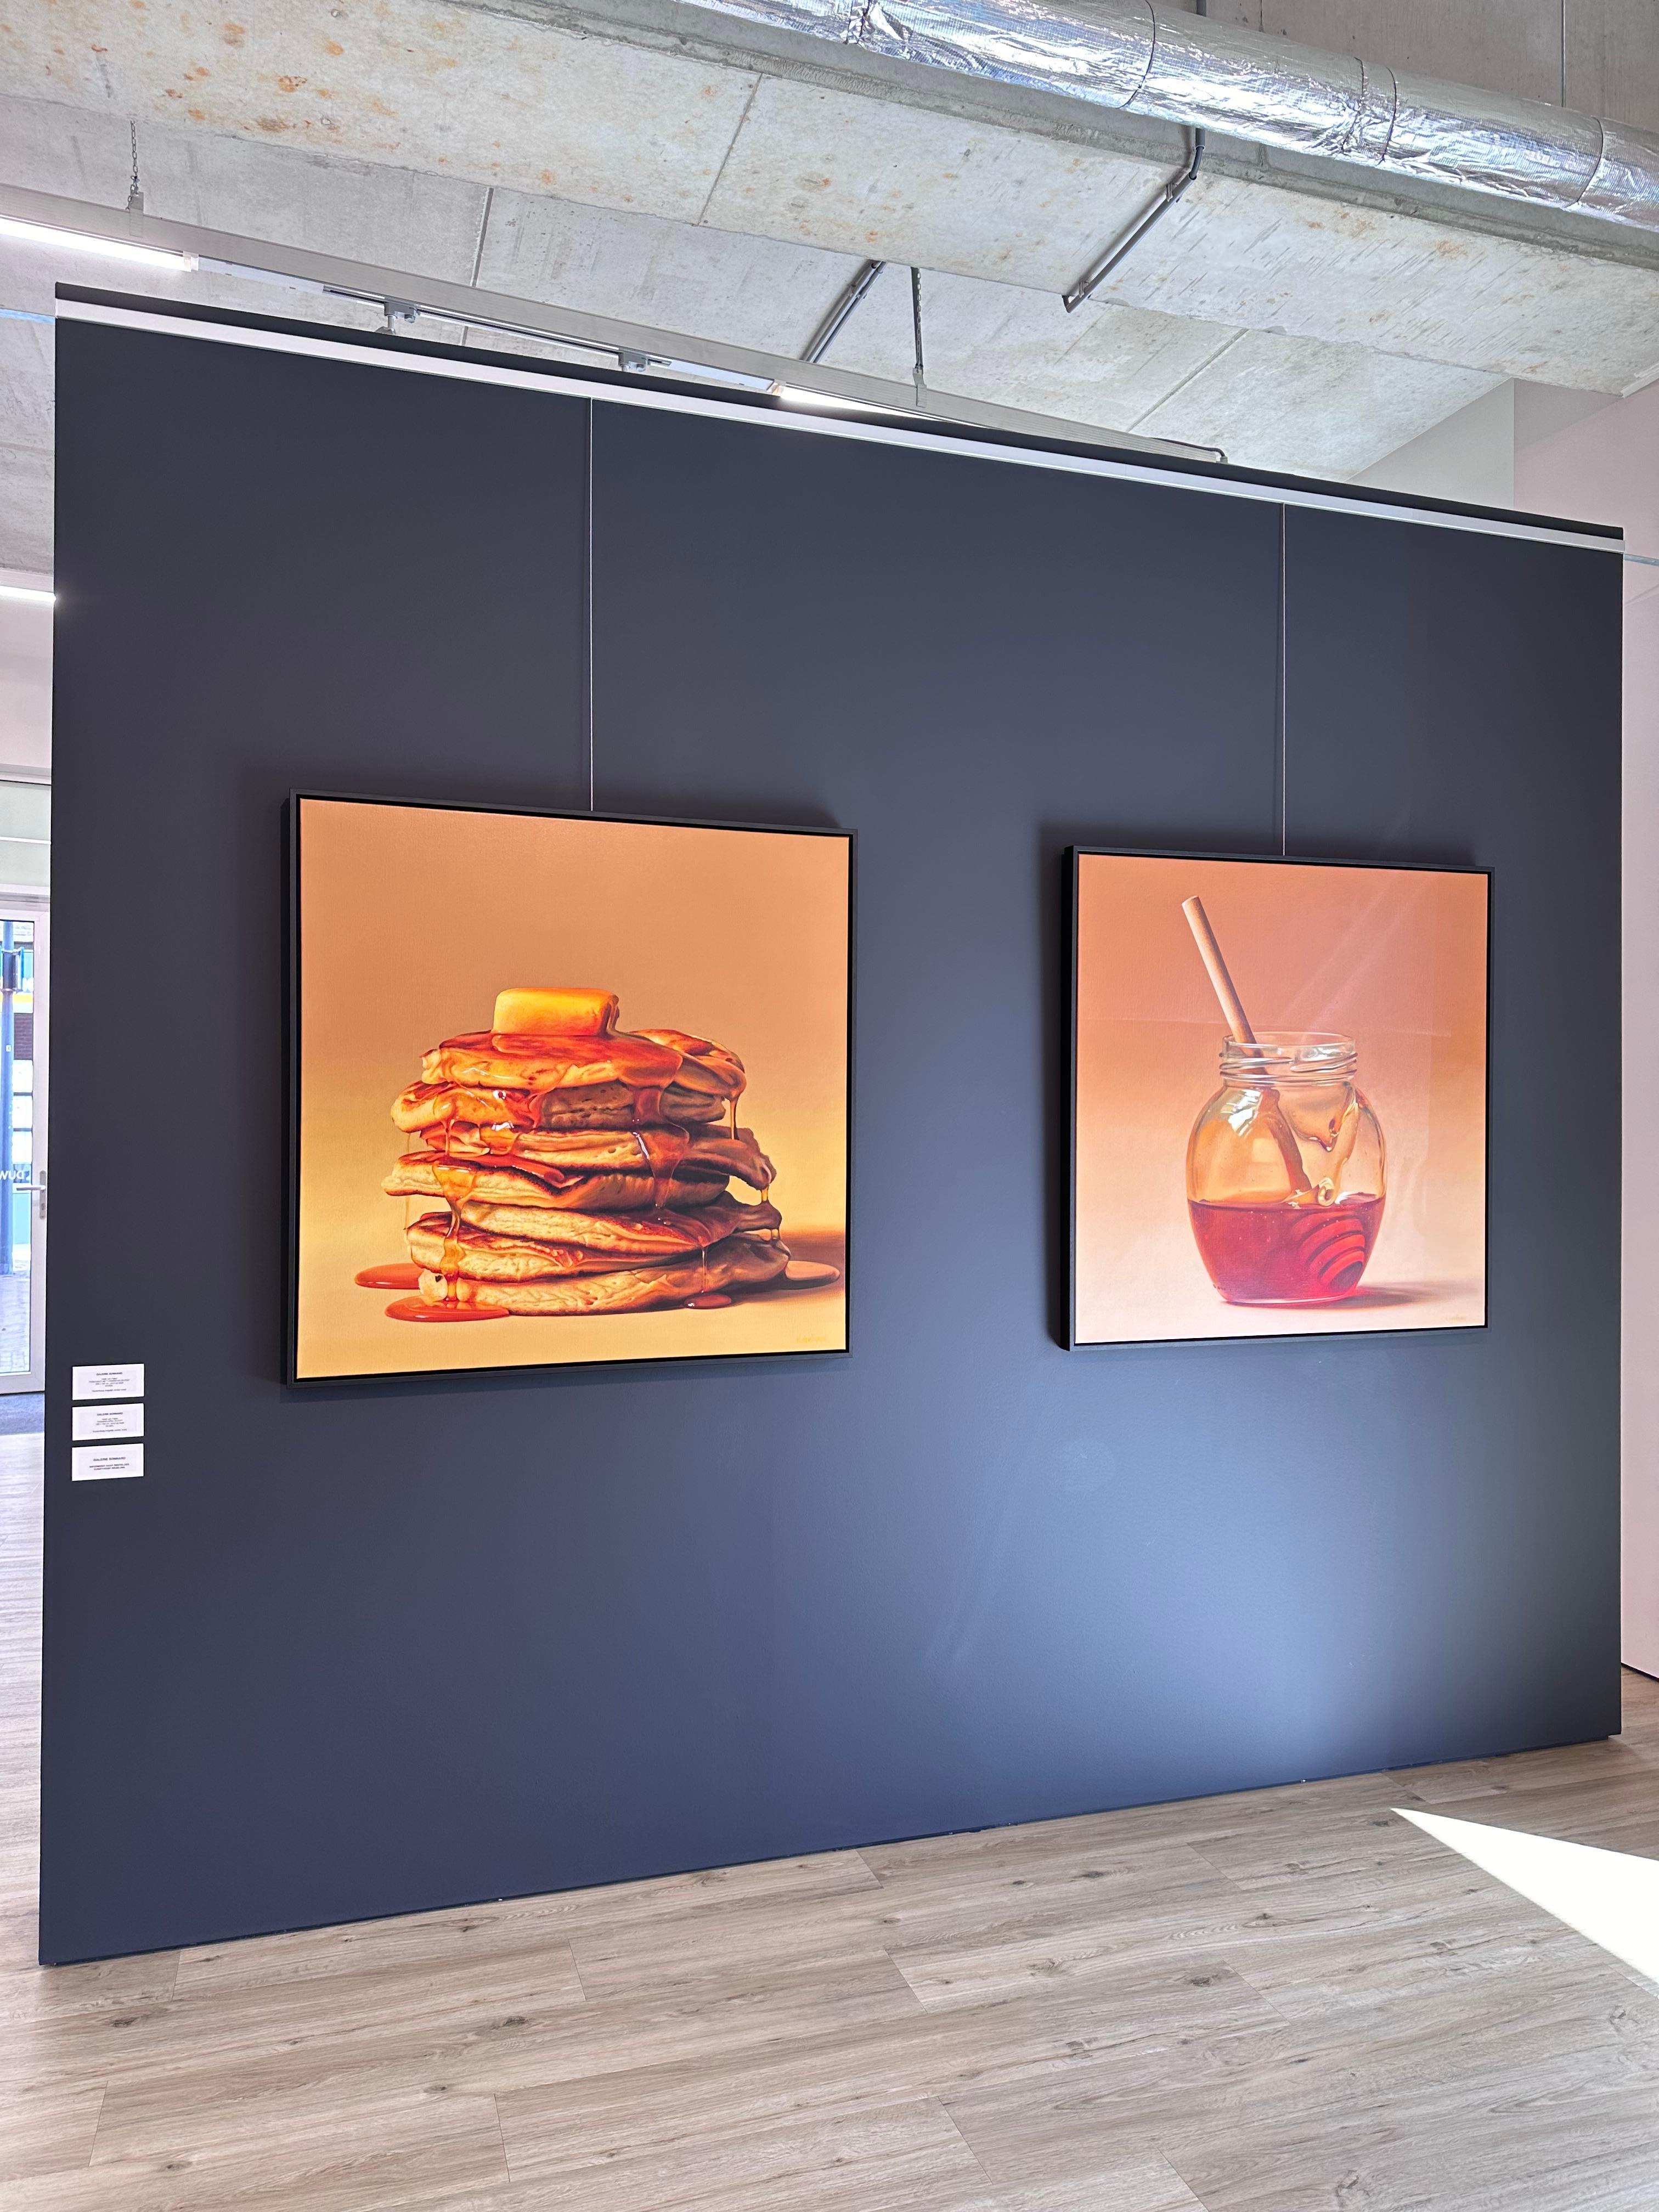 Heidi von Faber
Crêpes, beurre et sirop
Acrylique sur lin
100 x 100 cm ( encadré/ inclus dans le prix 105 x 105 cm)

L'artiste néerlandaise Heidi Von Faber vit et travaille à La Haye. 

Les natures mortes qu'elle peint sont modernes mais réalisées